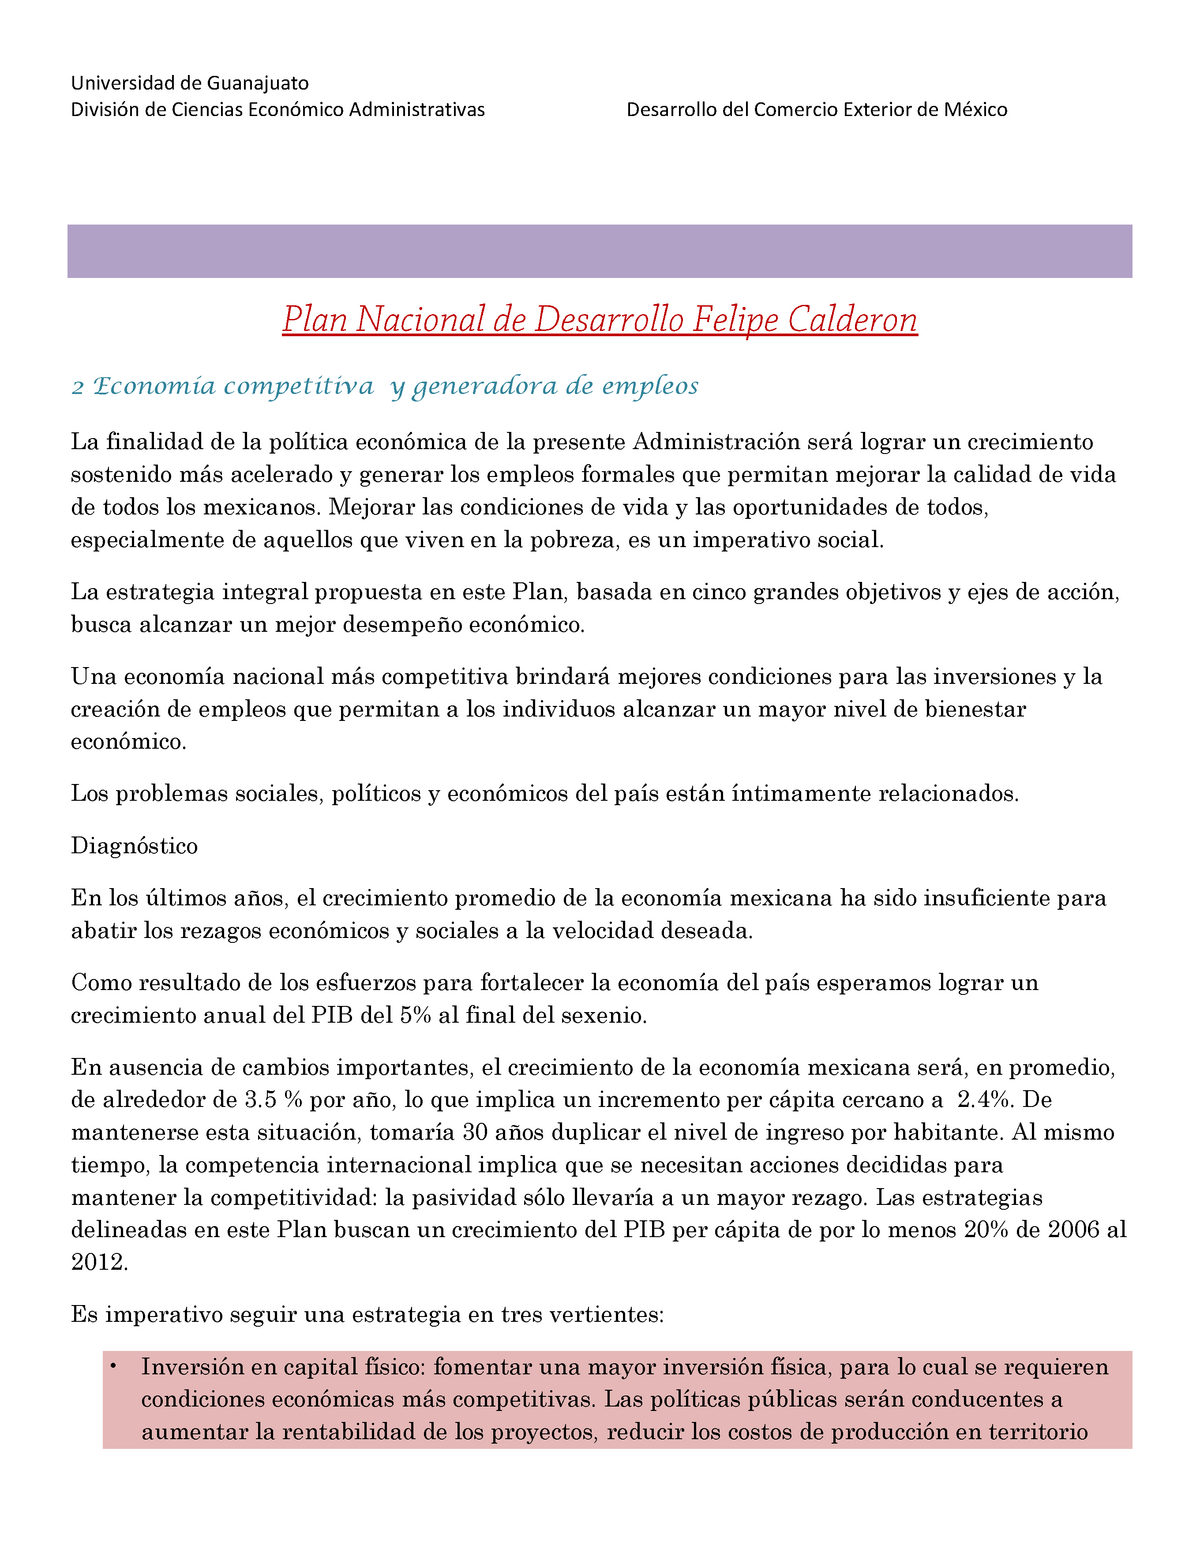 Plan Nacional de Desarrollo de Felipe Calderon - División de Ciencias  Económico Administrativas - Studocu